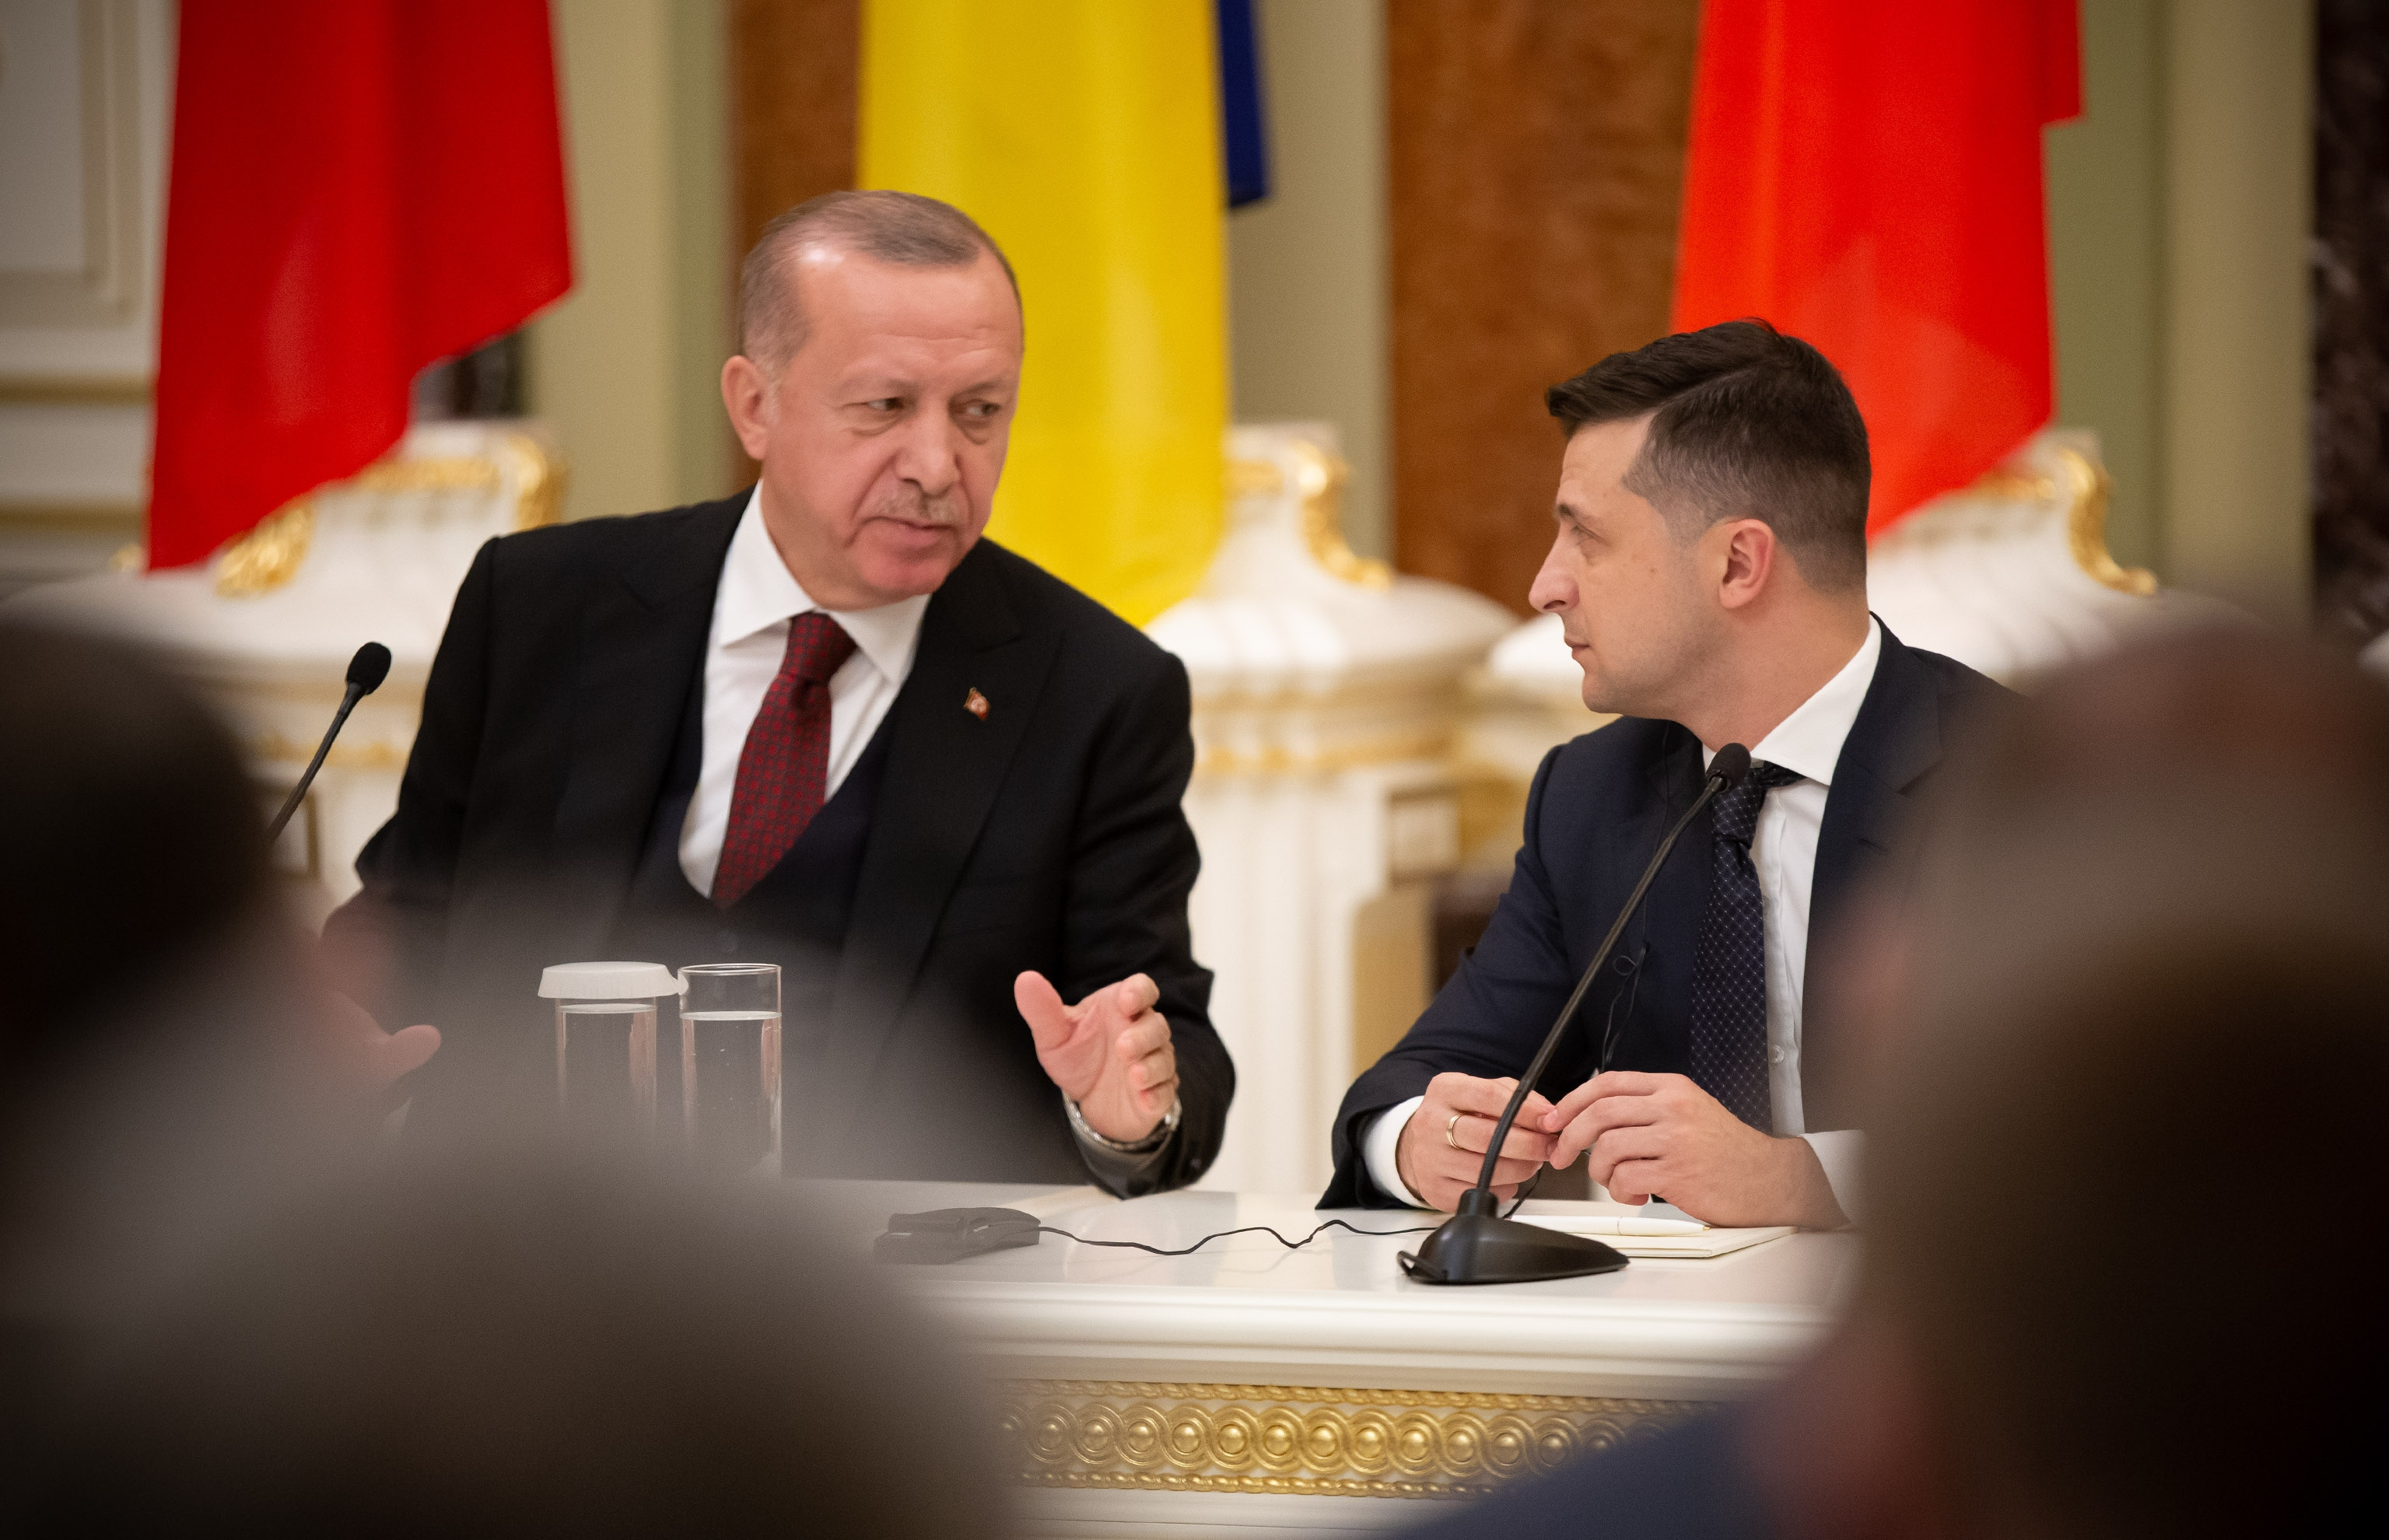 Обнародована дата визита Эрдогана в Украину